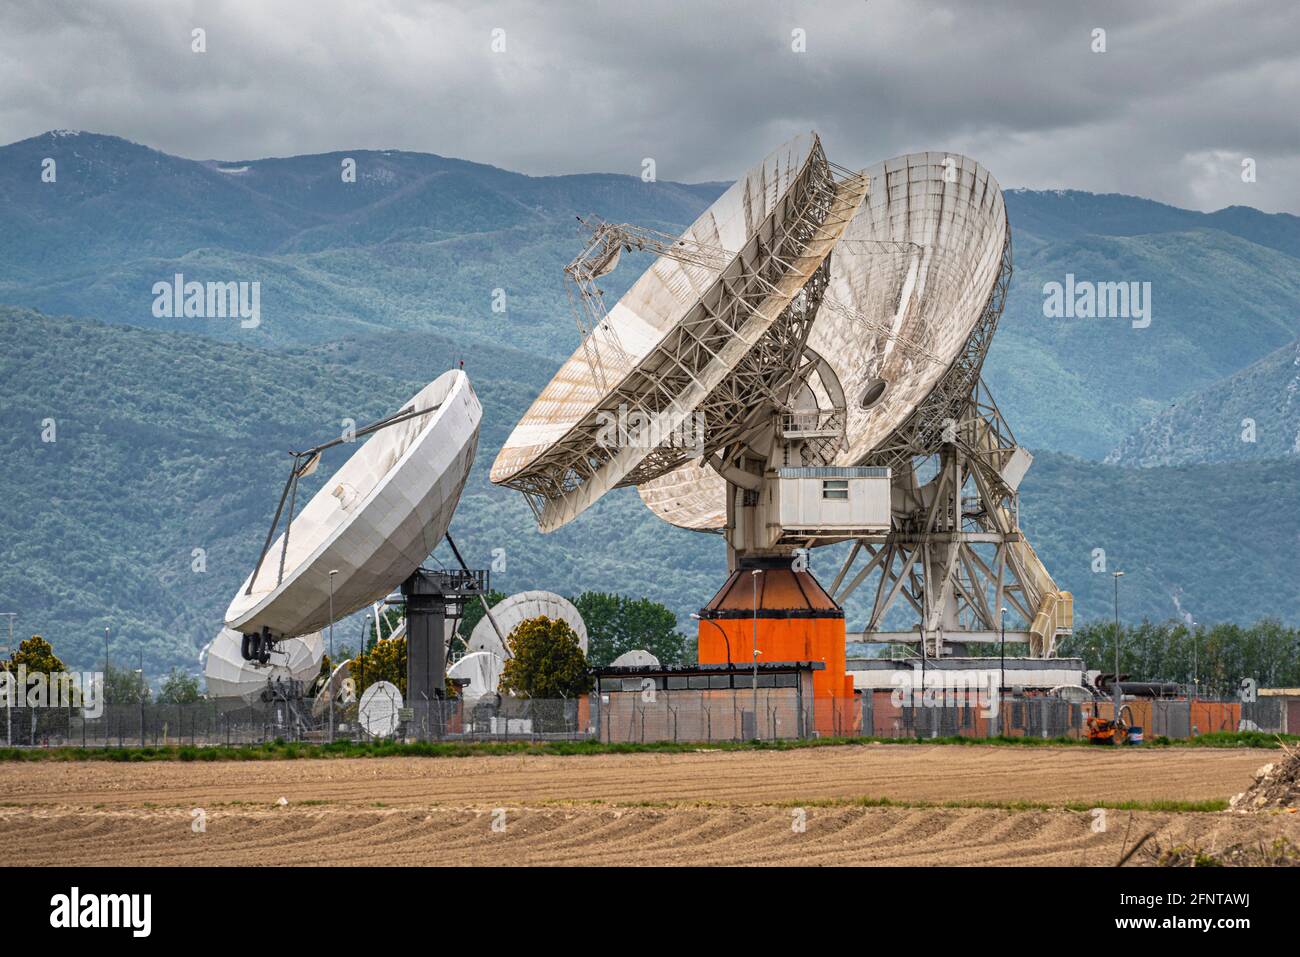 Telespazio centre spatial à Fucino. Antenne parabolique pour les satellites en orbite et les services de télécommunications. Abruzzes, Italie, Europe Banque D'Images